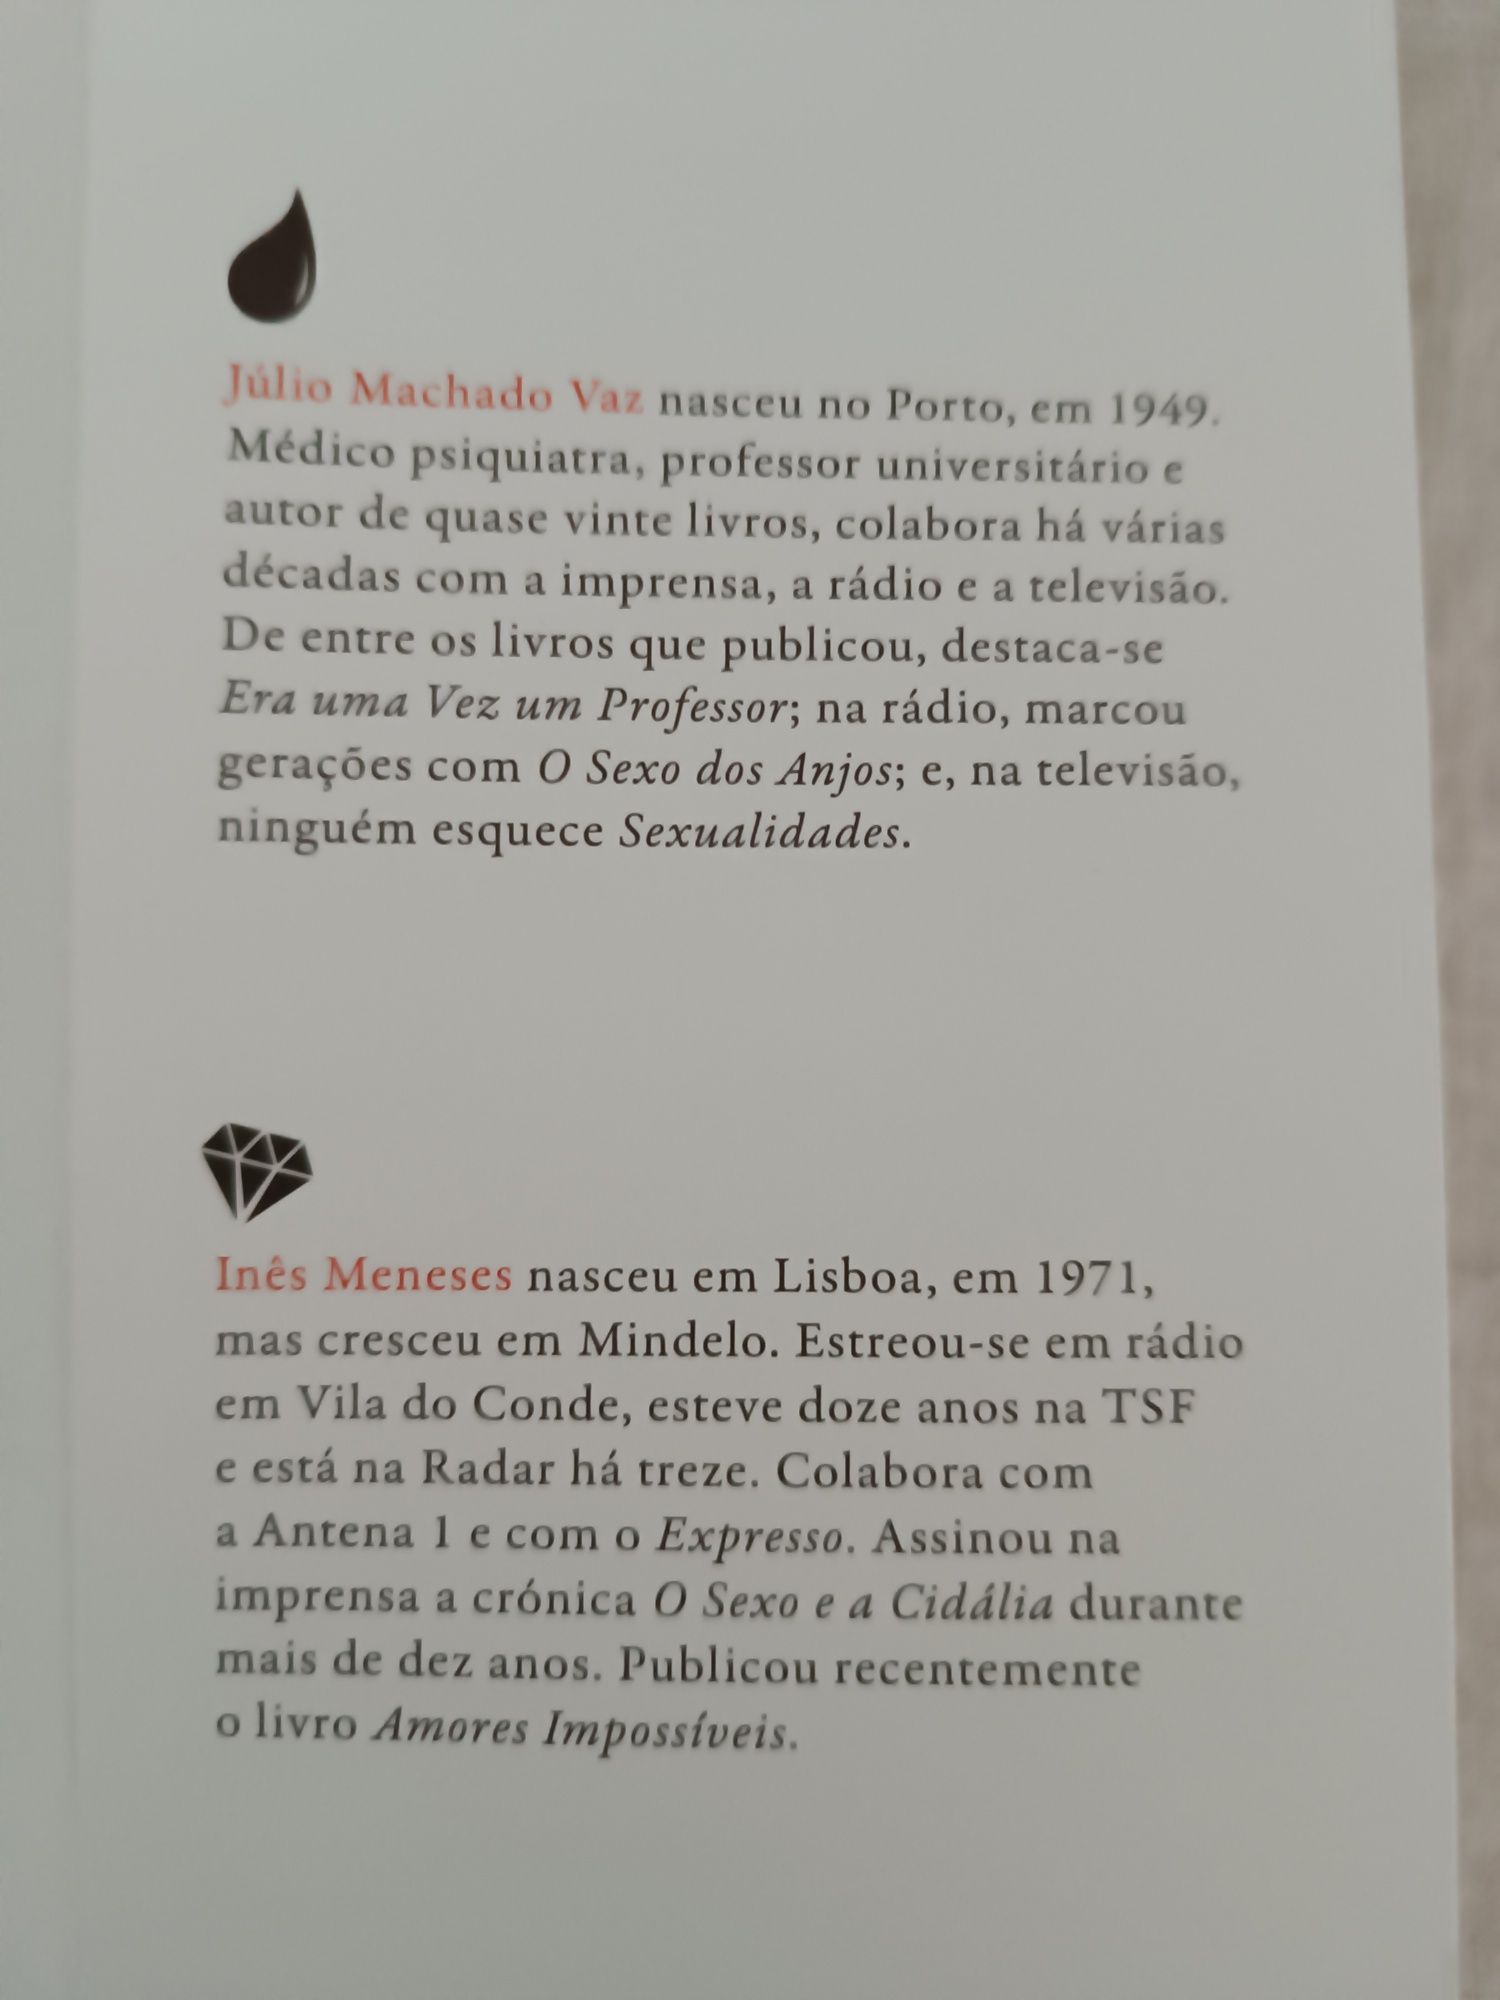 Livro "O amor é", de Júlio Machado Vaz 
Nunca lid